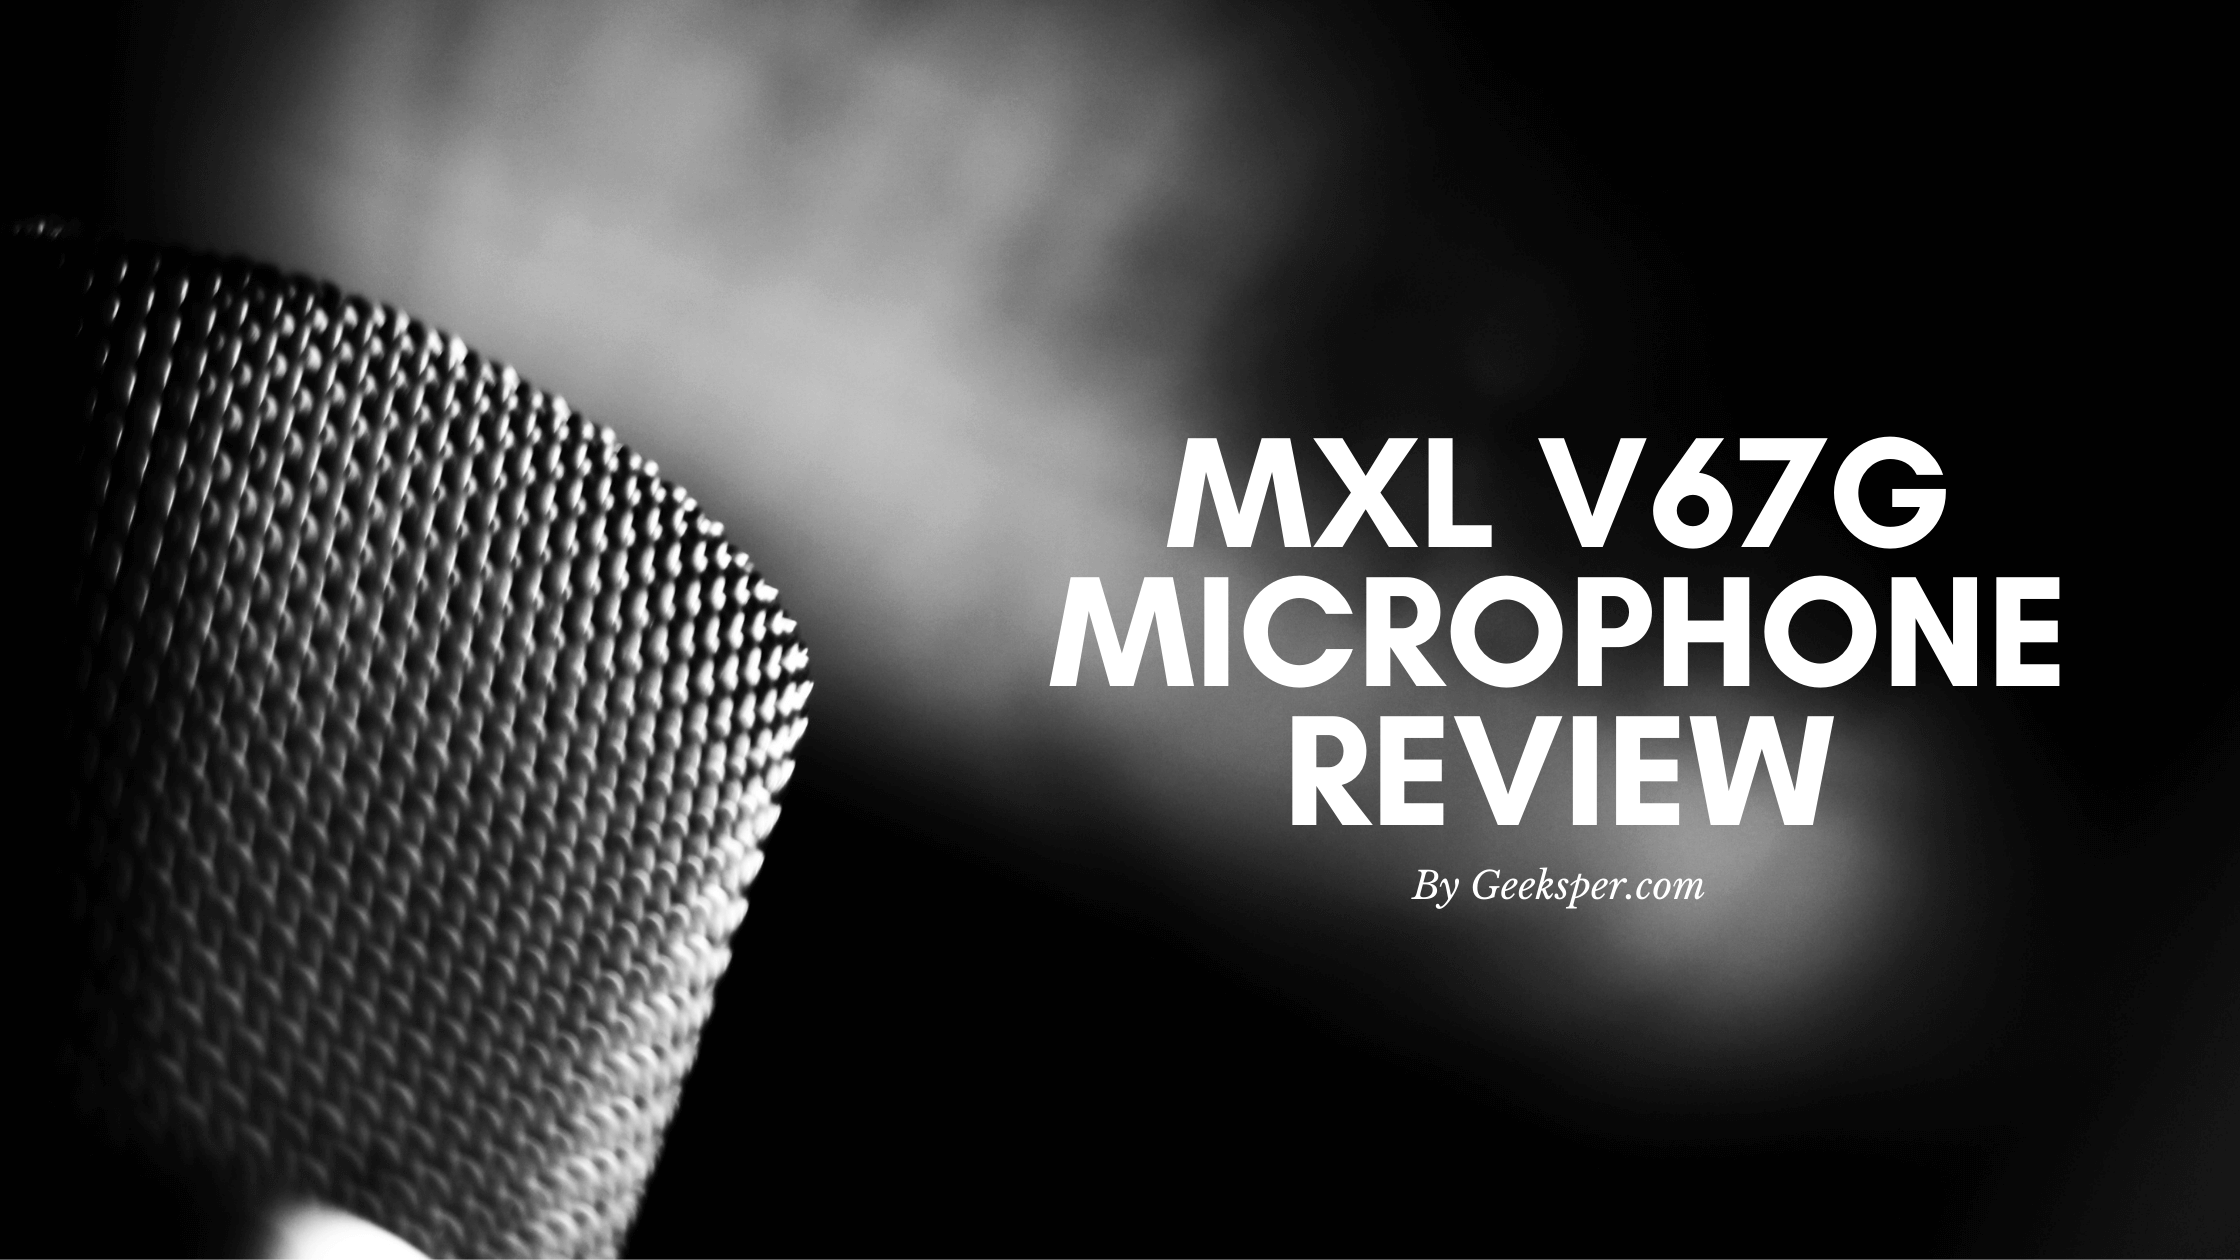 MXL V67G Review